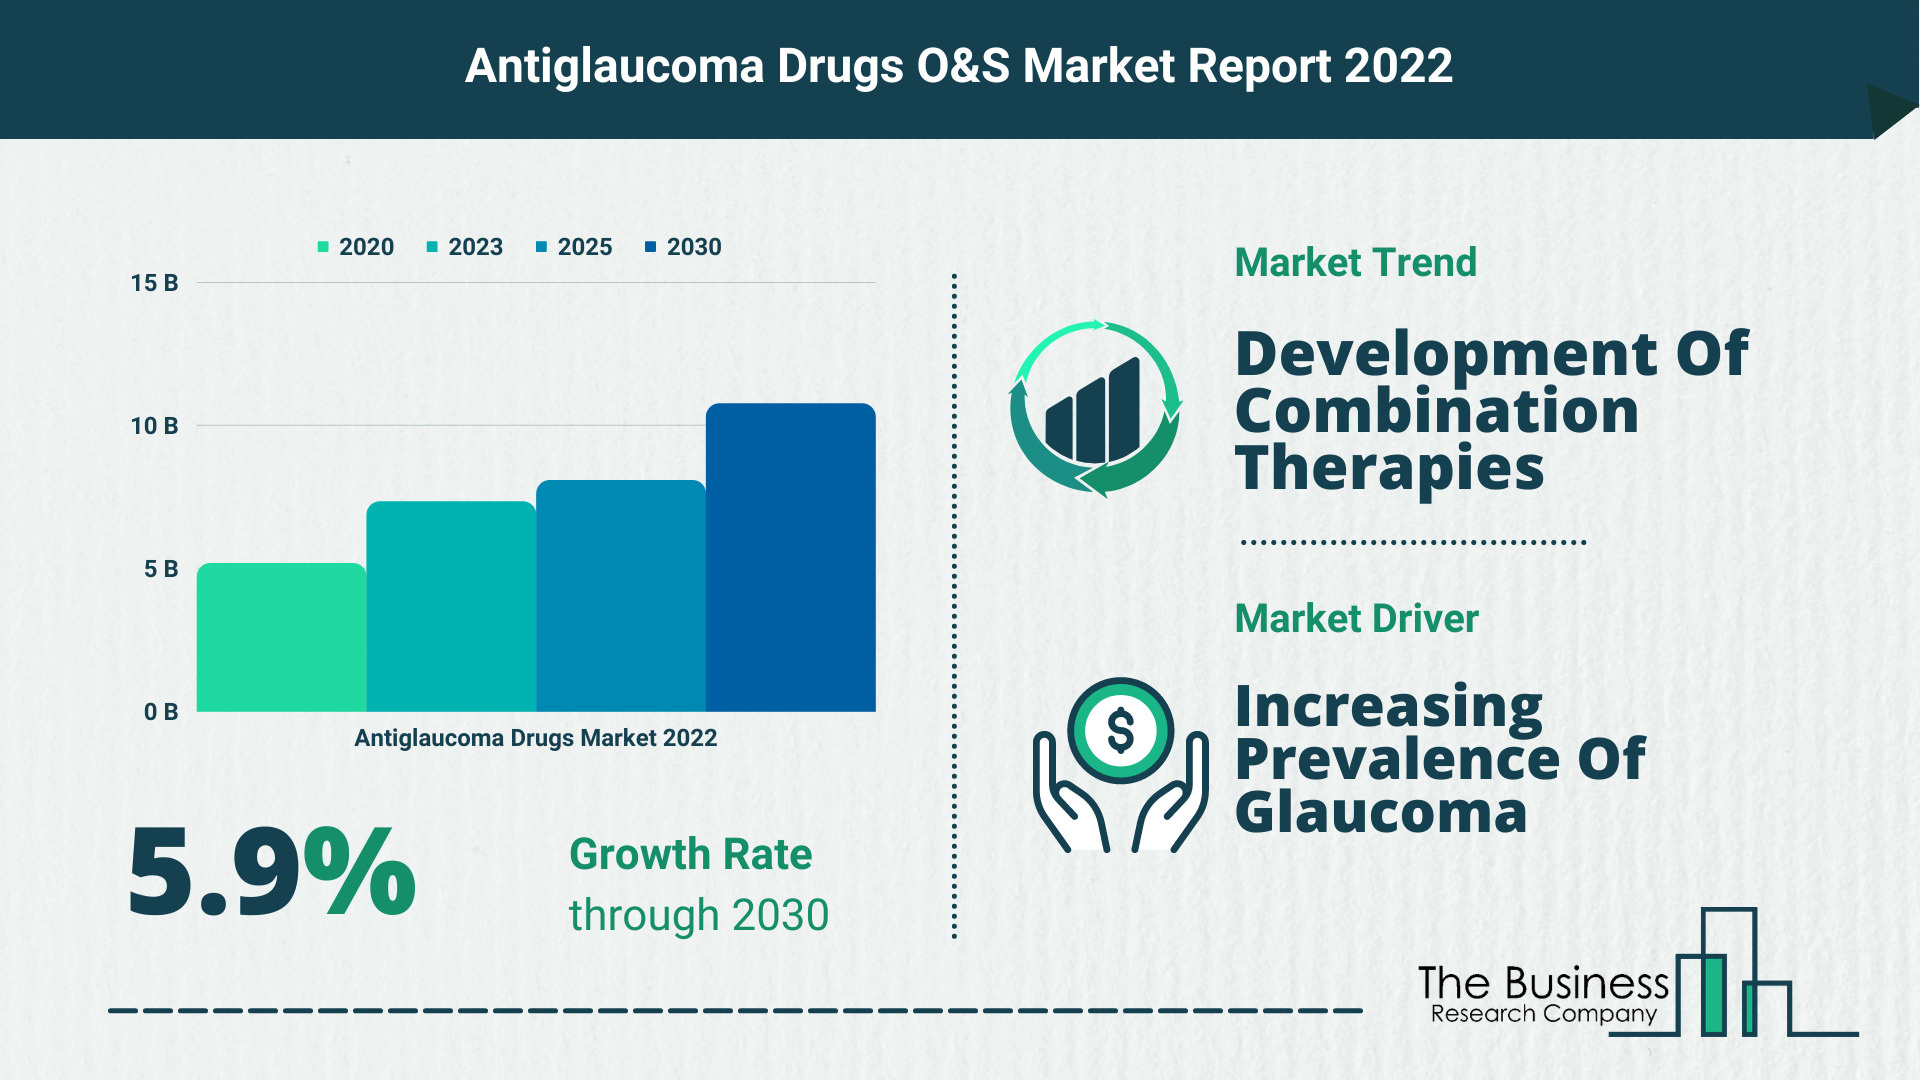 Global Antiglaucoma Drugs Market Size